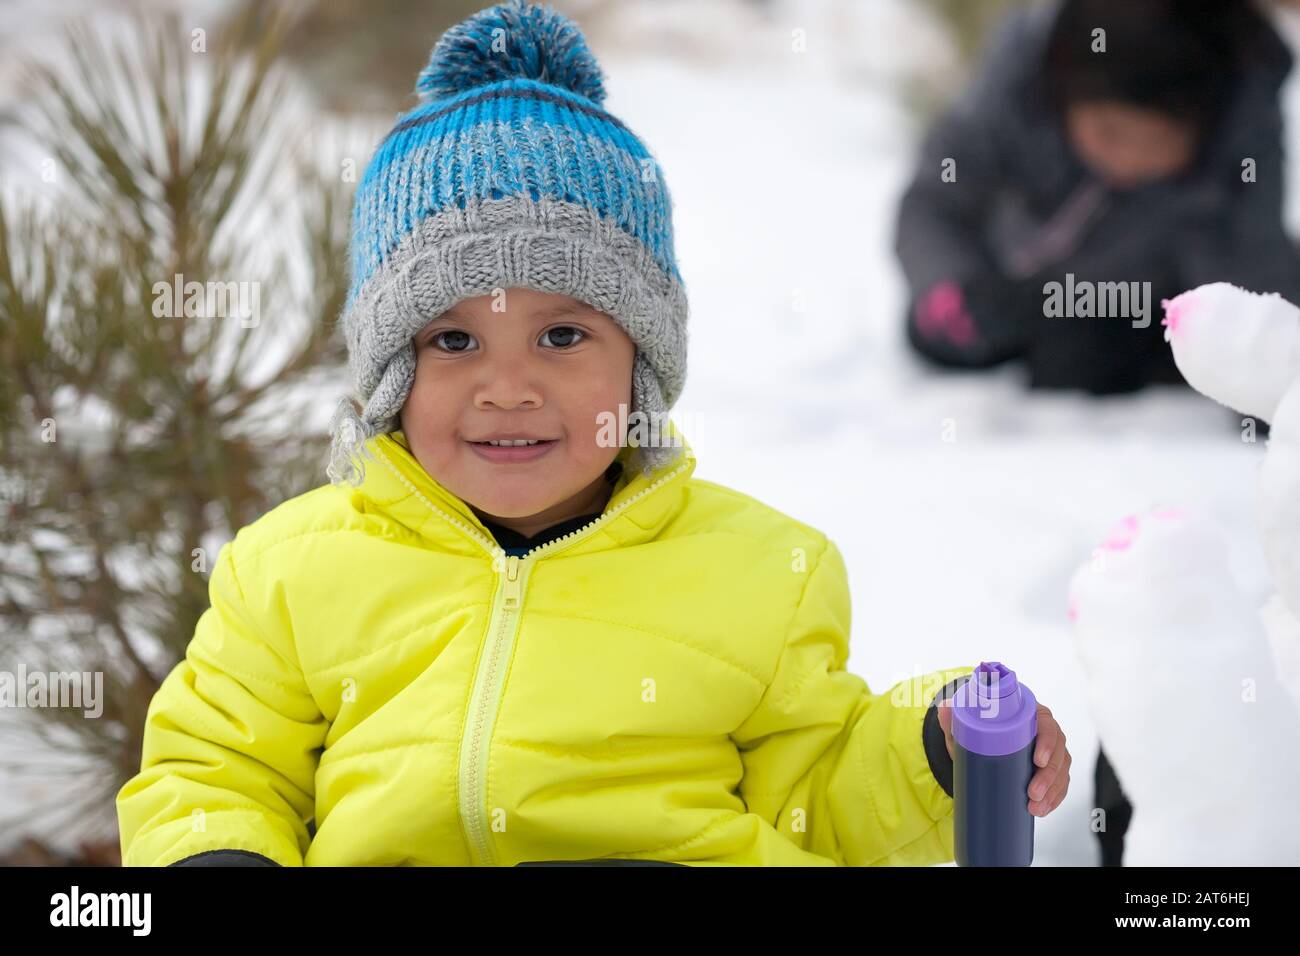 Ein kleiner Junge mit einem niedlichen Lächeln, das sich in einem schneebedeckten Berg befindet, farbenfrohe Winterkleidung trägt und einen Schneemann mit Farben malt. Stockfoto